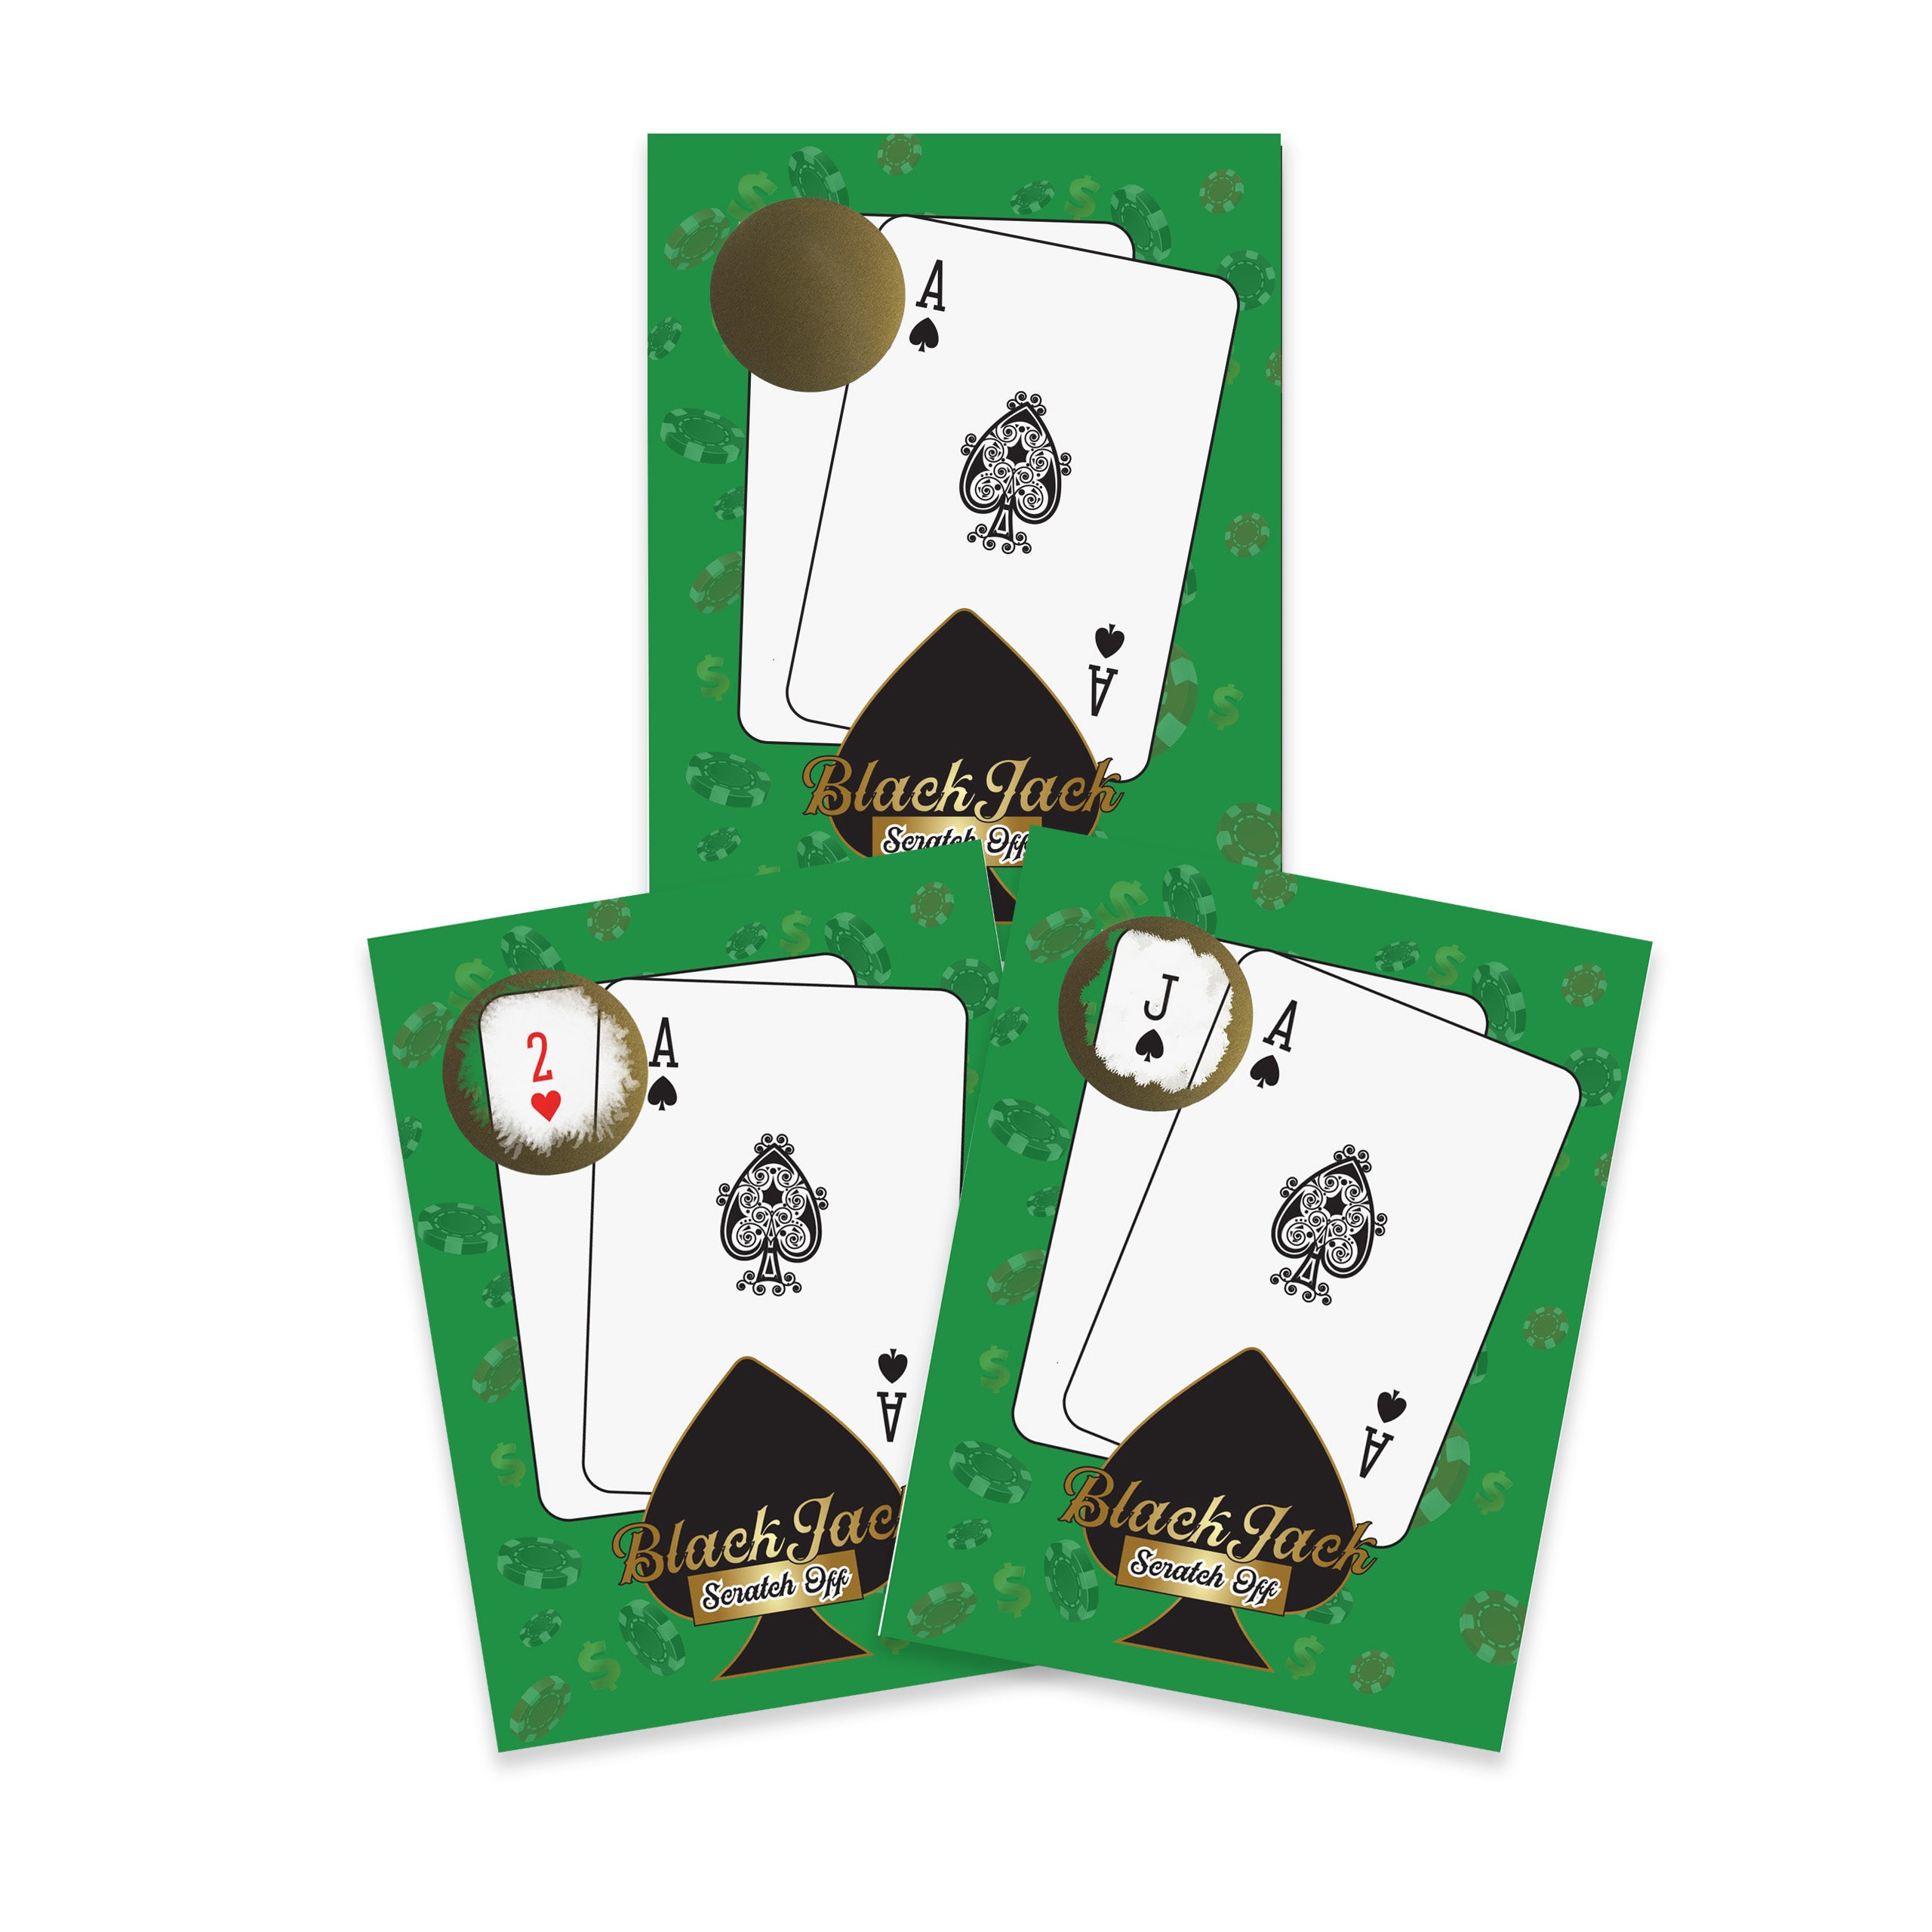 Casino Night Blackjack Scratch Off Game Cards 26 Pack - 2 Winning and 24 Non-Winning Cards - My Scratch Offs